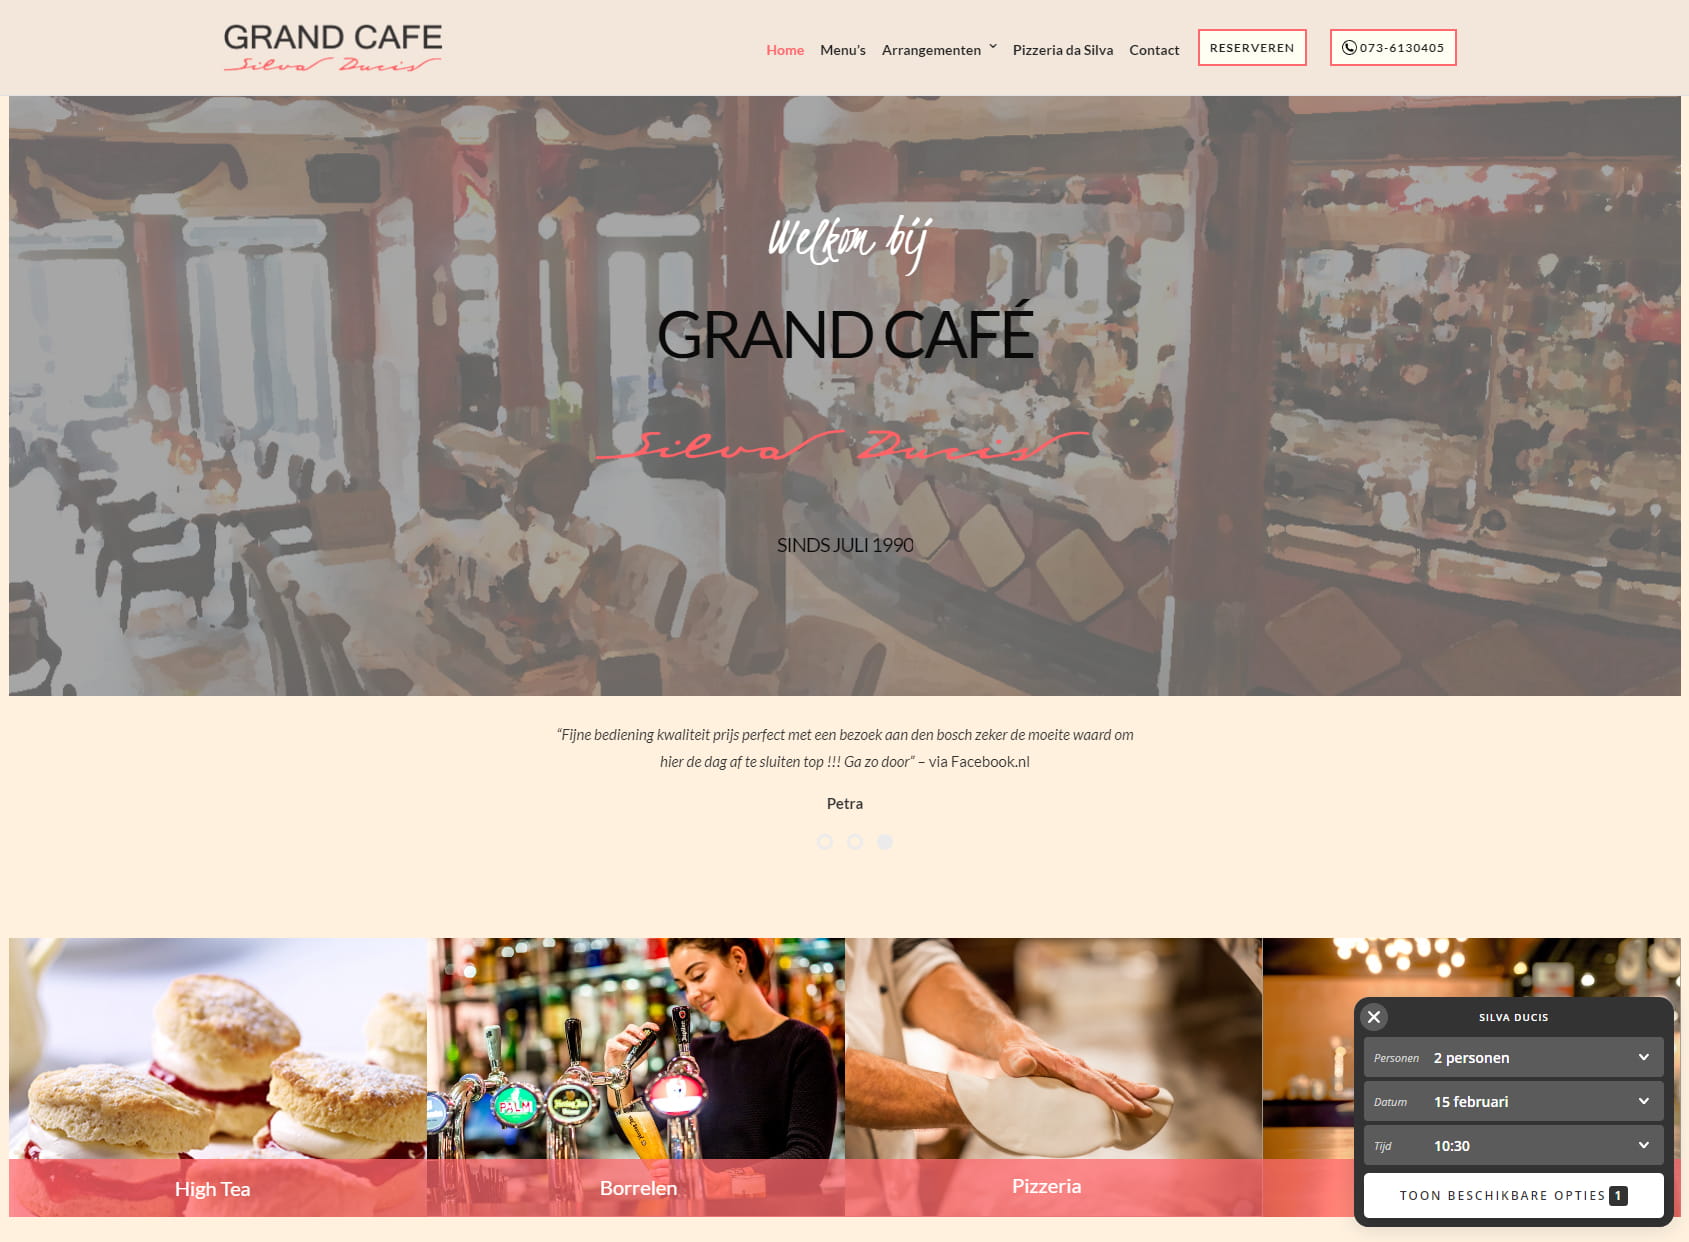 Grand Café Silva Ducis